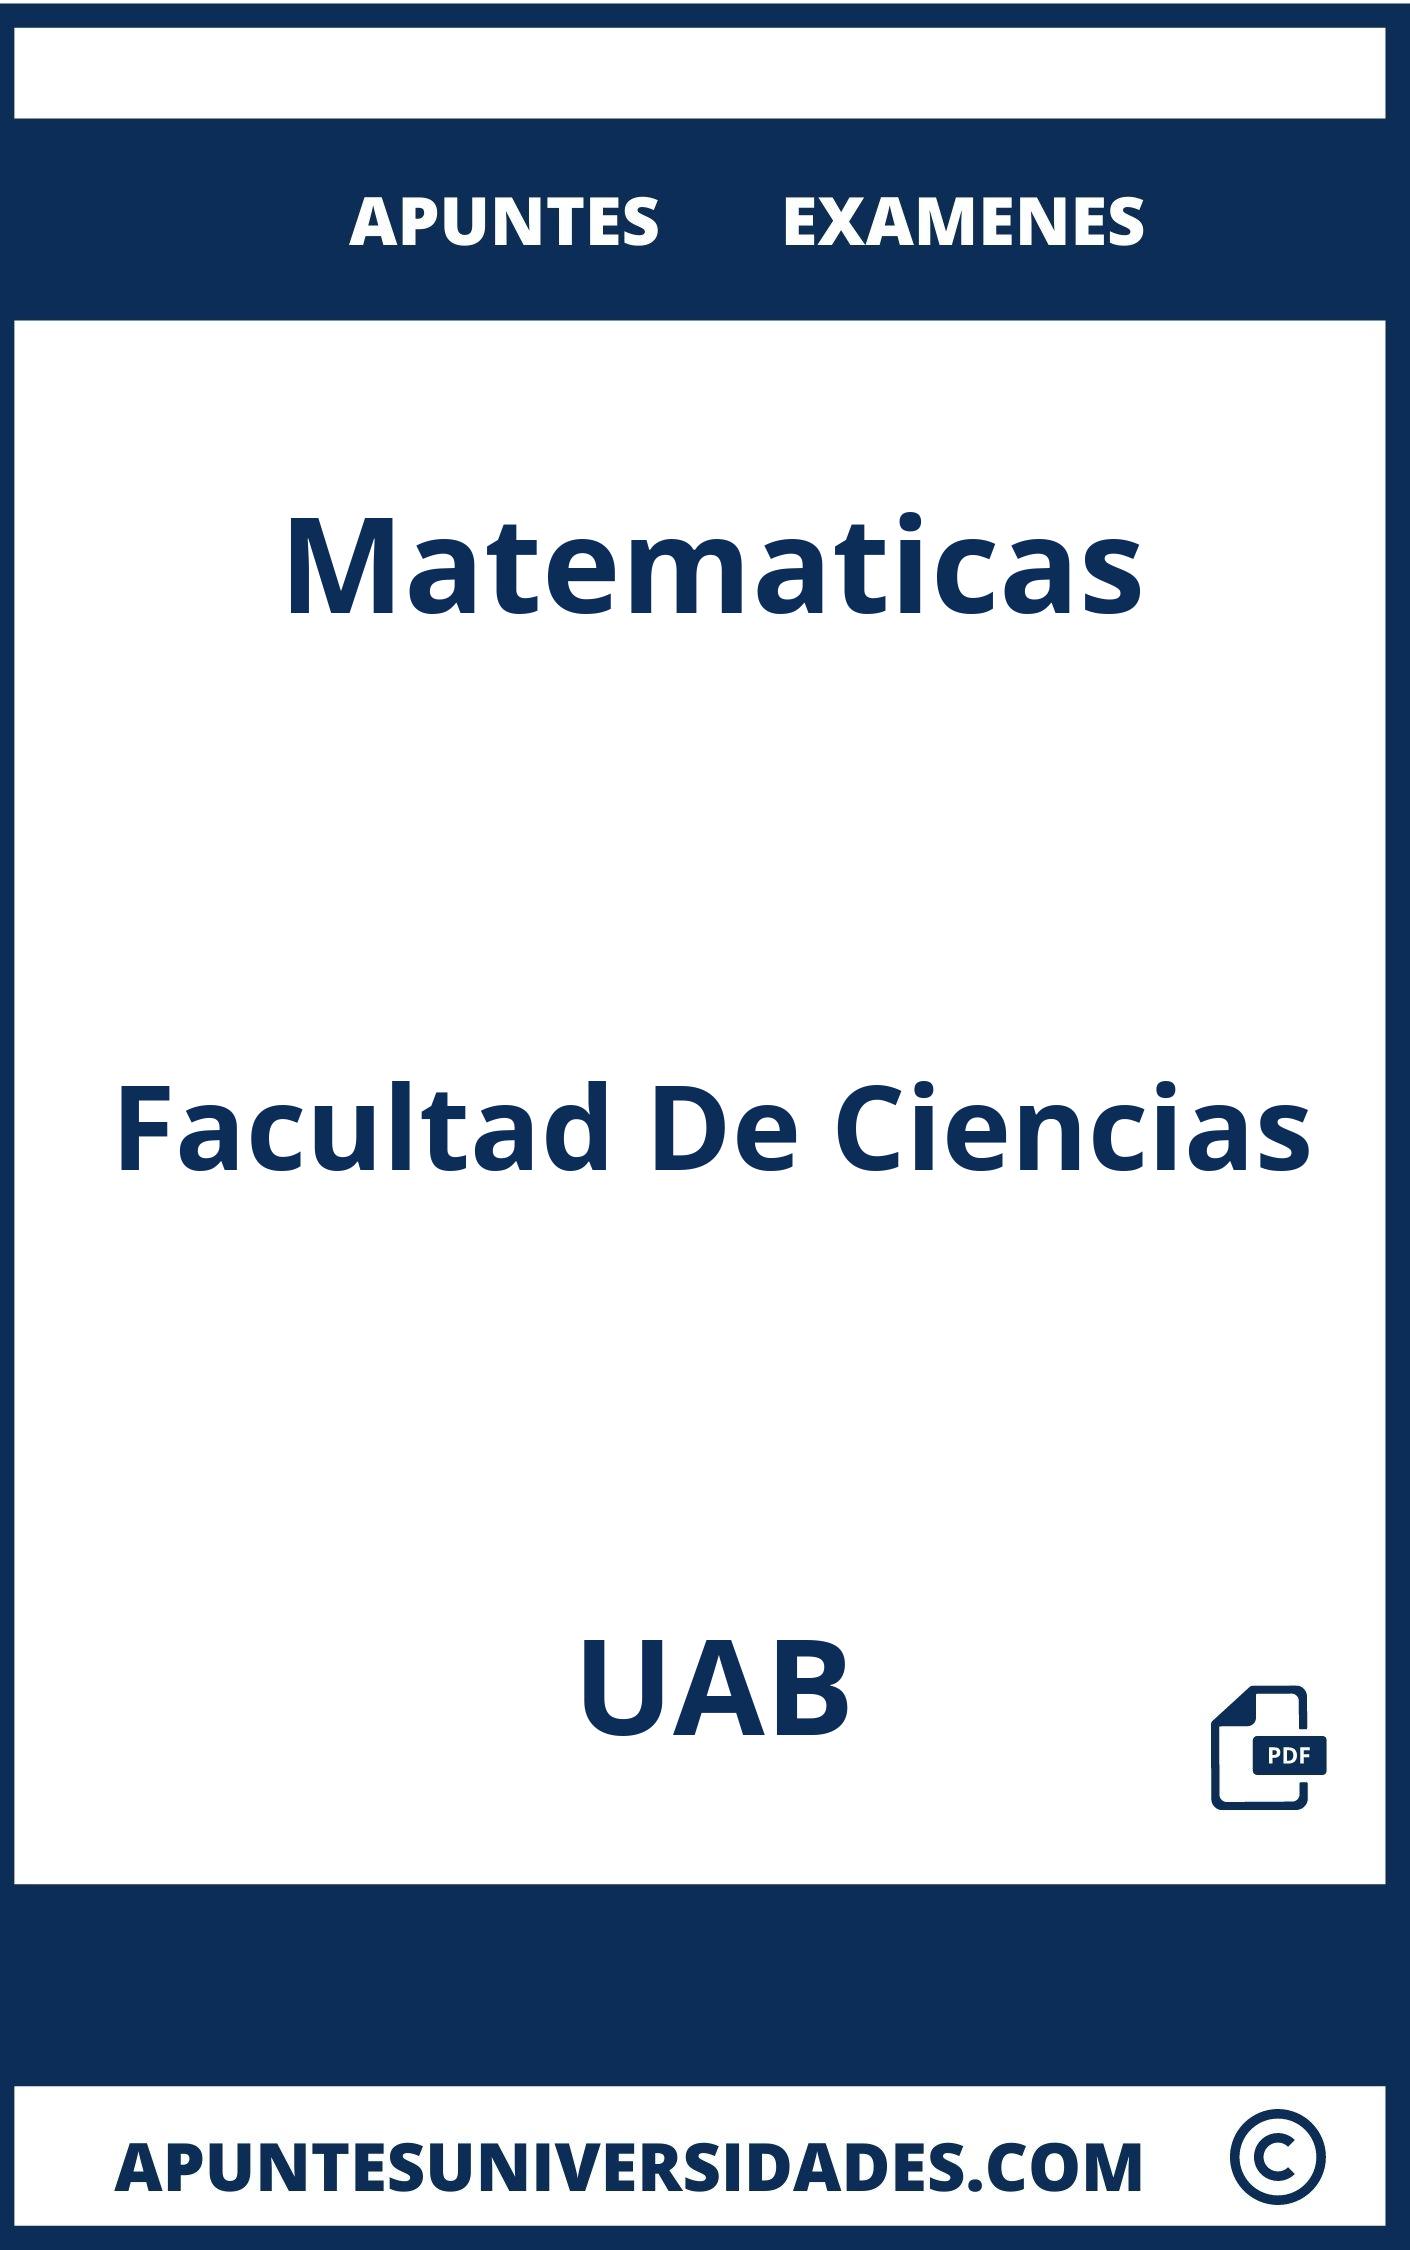 Examenes y Apuntes de Matematicas UAB